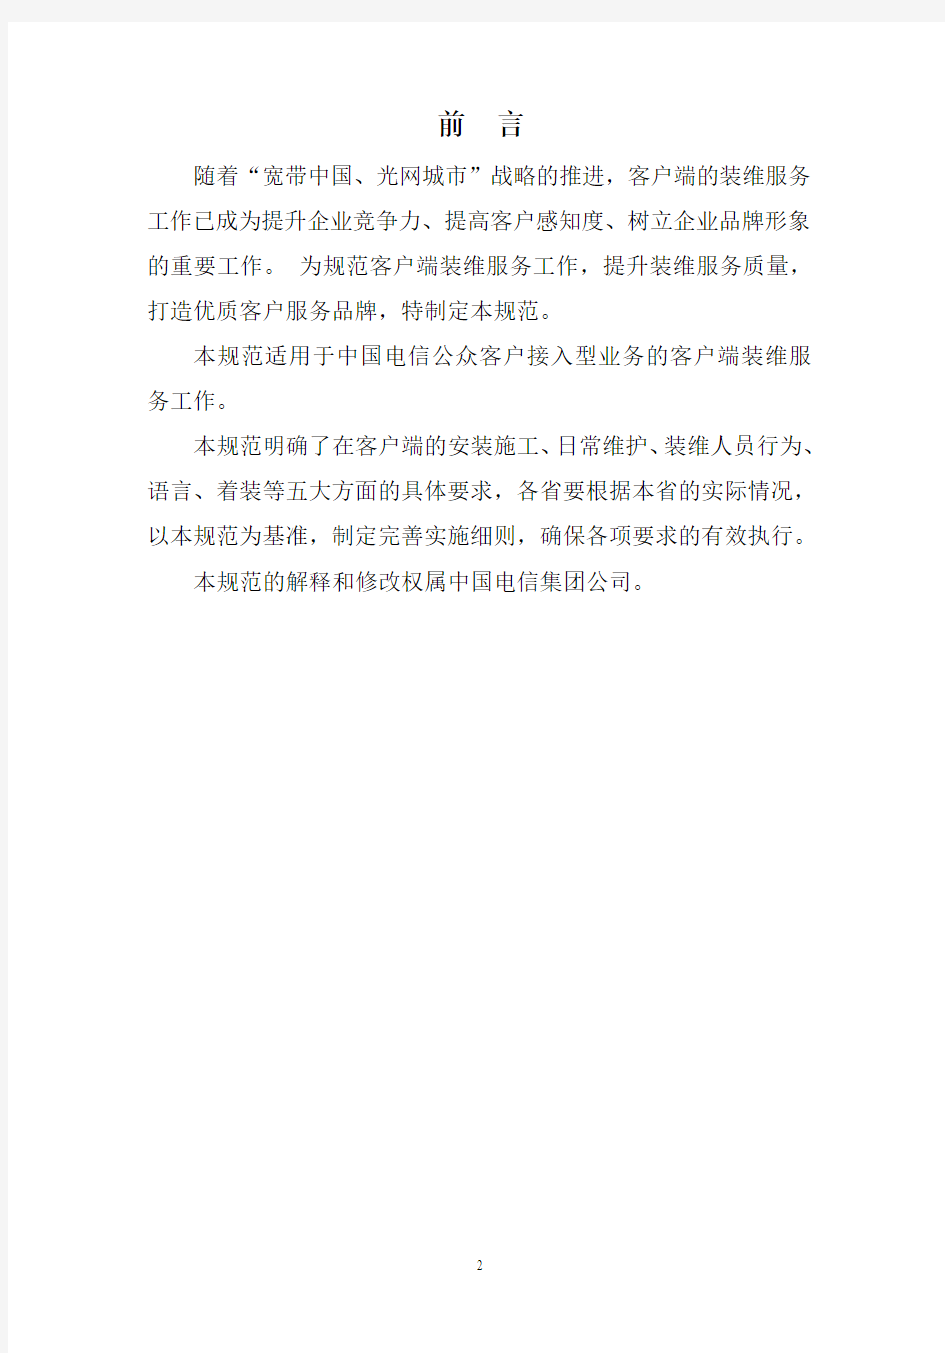 中国电信接入型业务客户端装维操作